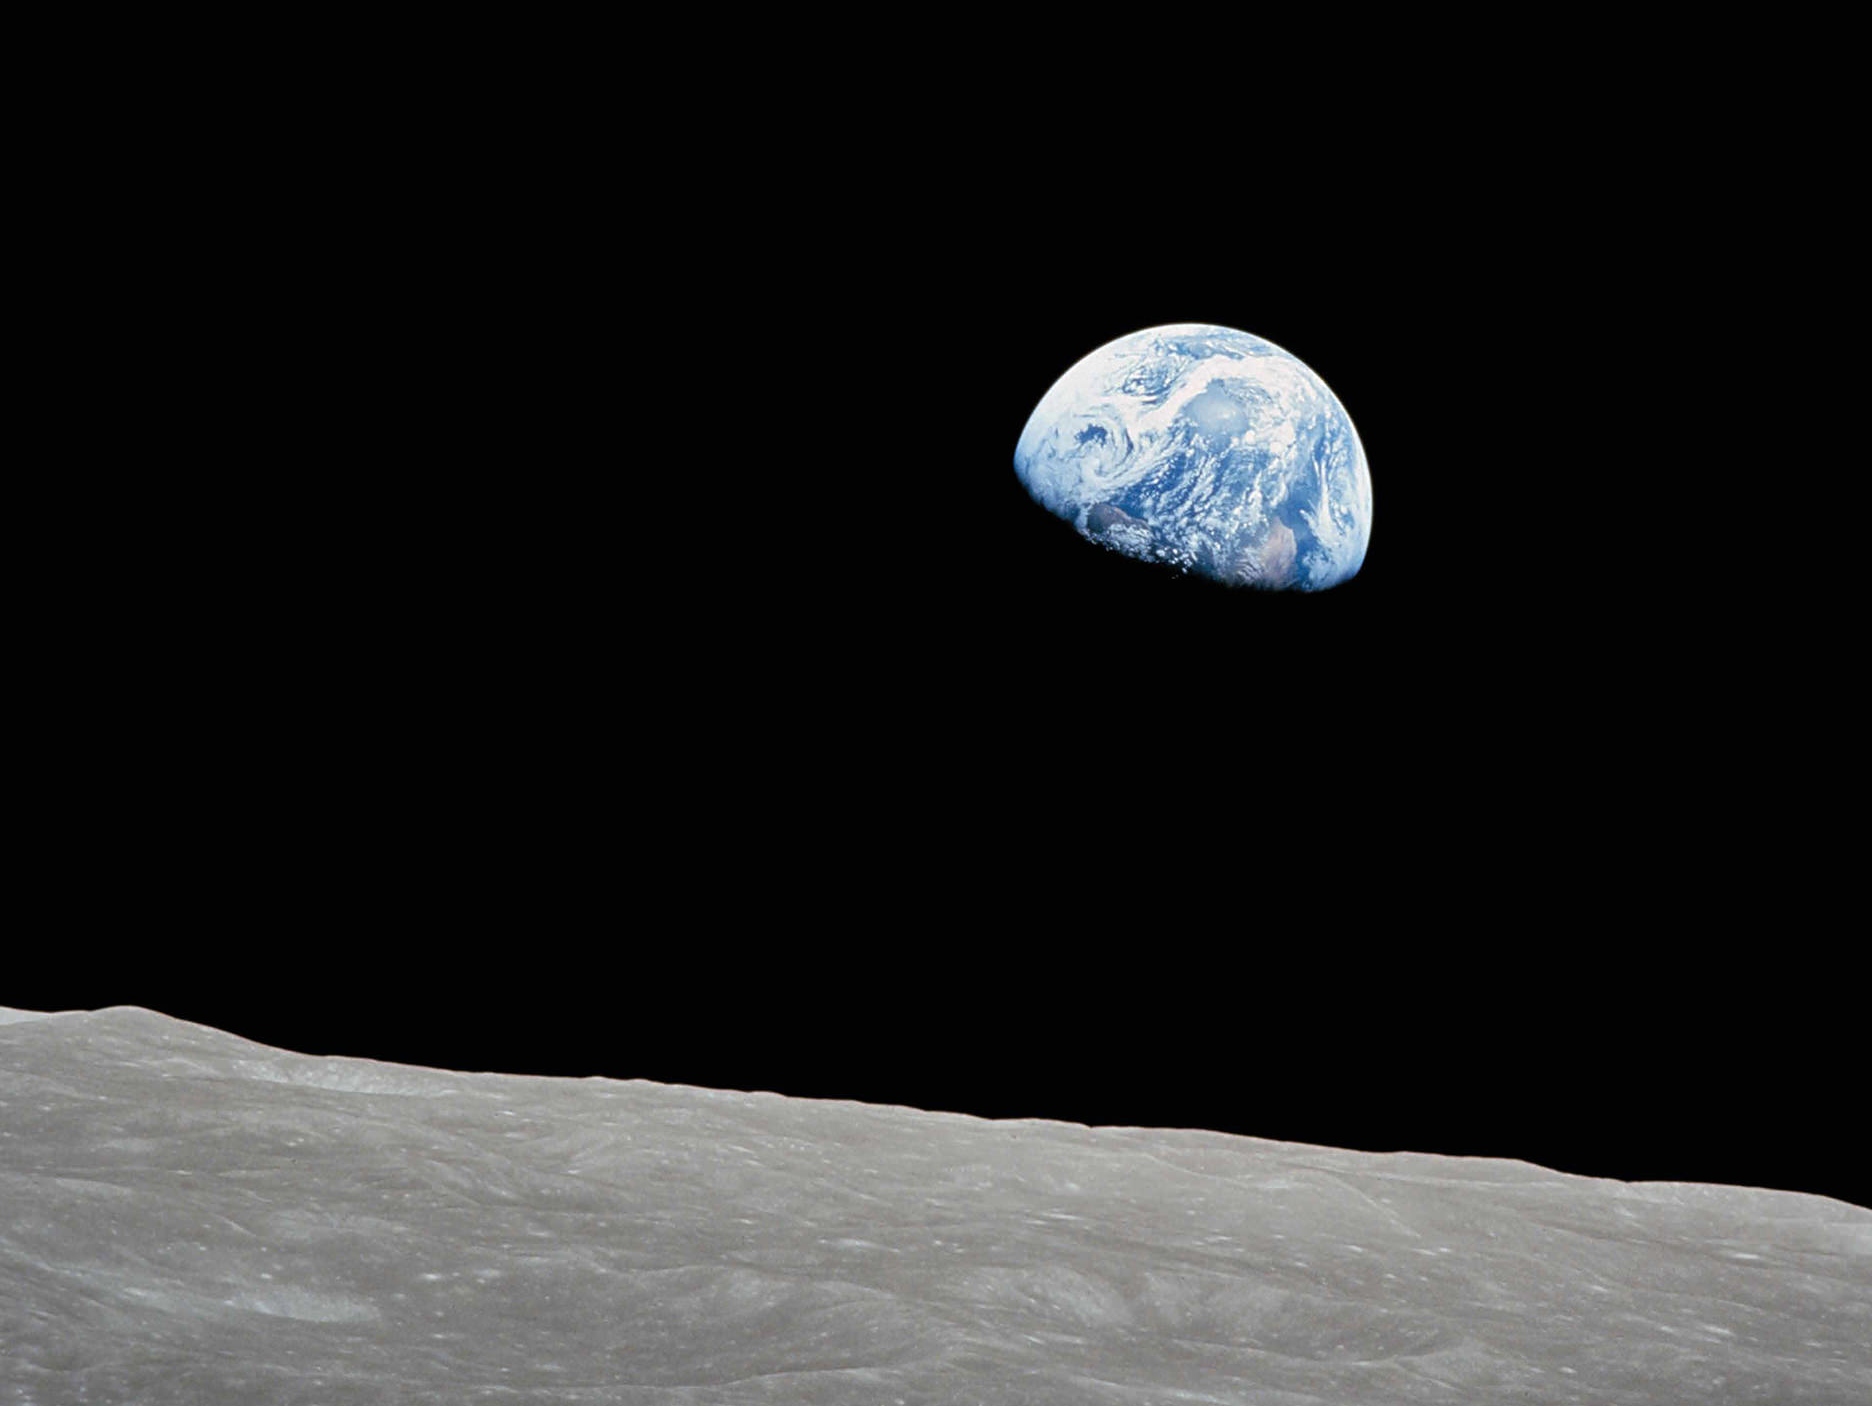 Perspectief vanaf het maanoppervlak naar de aarde.